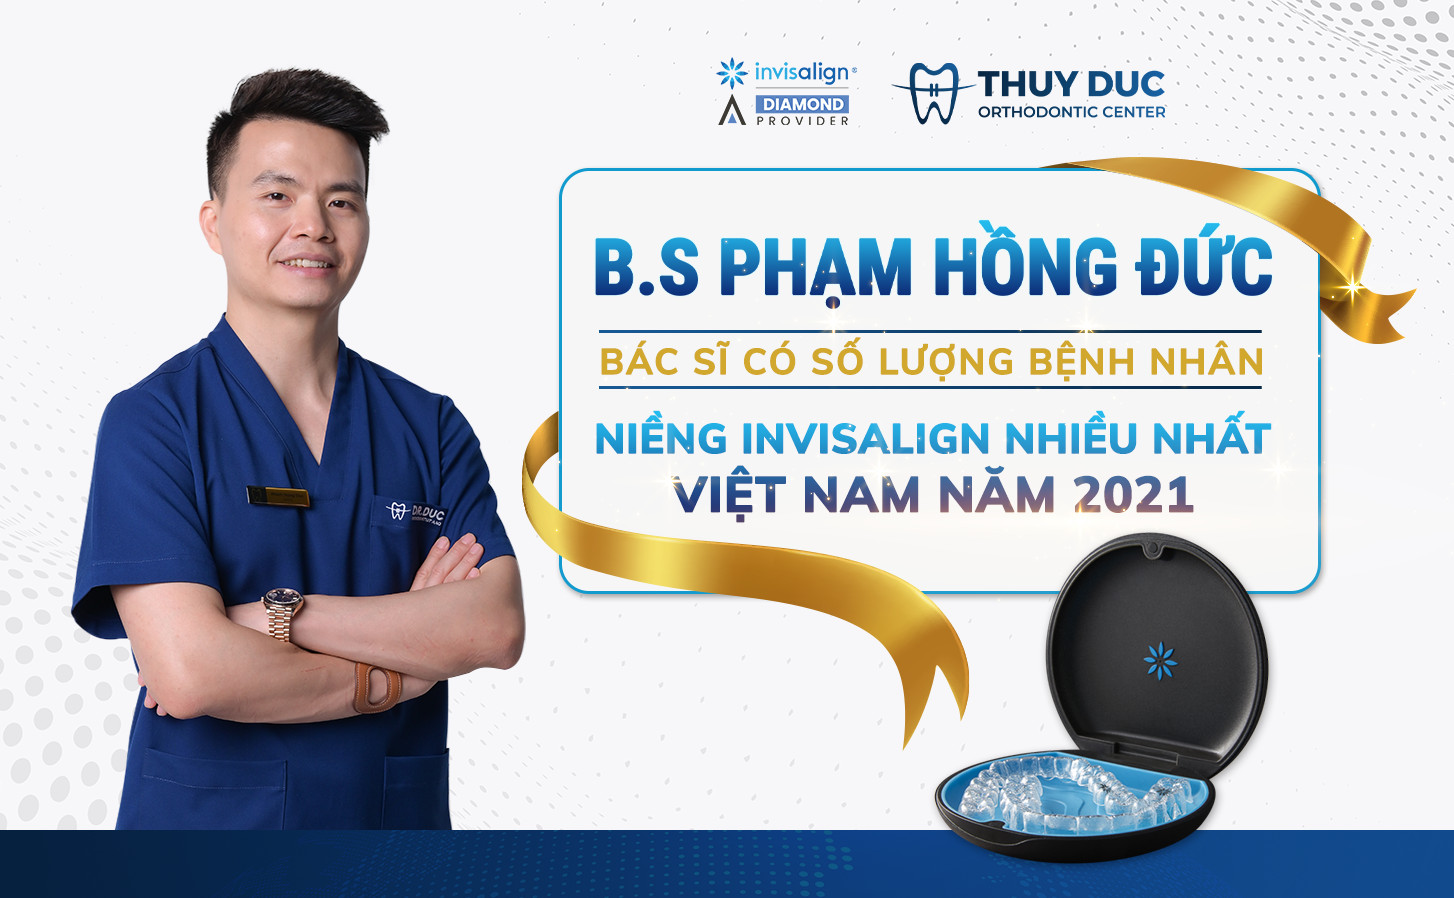 BS.Phạm Hồng Đức - Bác sĩ có số lượng bệnh nhân Invisalign nhiều nhất Việt Nam năm 2021 1